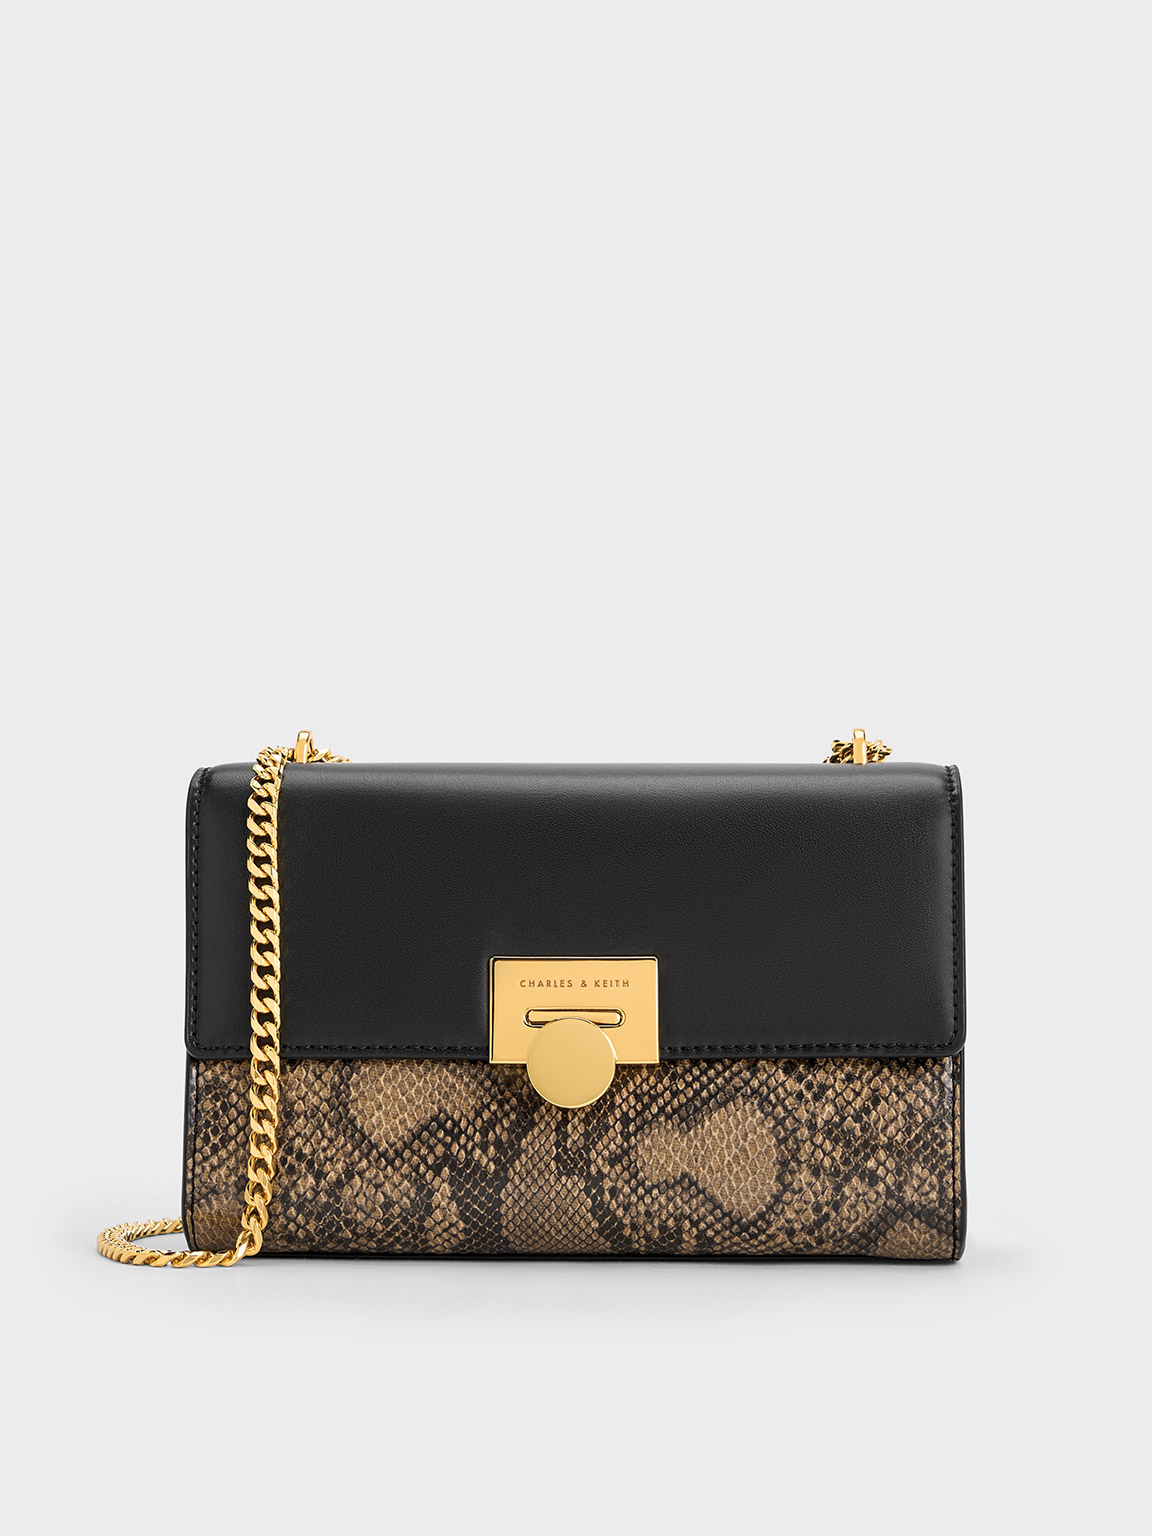 Buy Charles Keith Handbag High-End Quality For Women (LAK172)